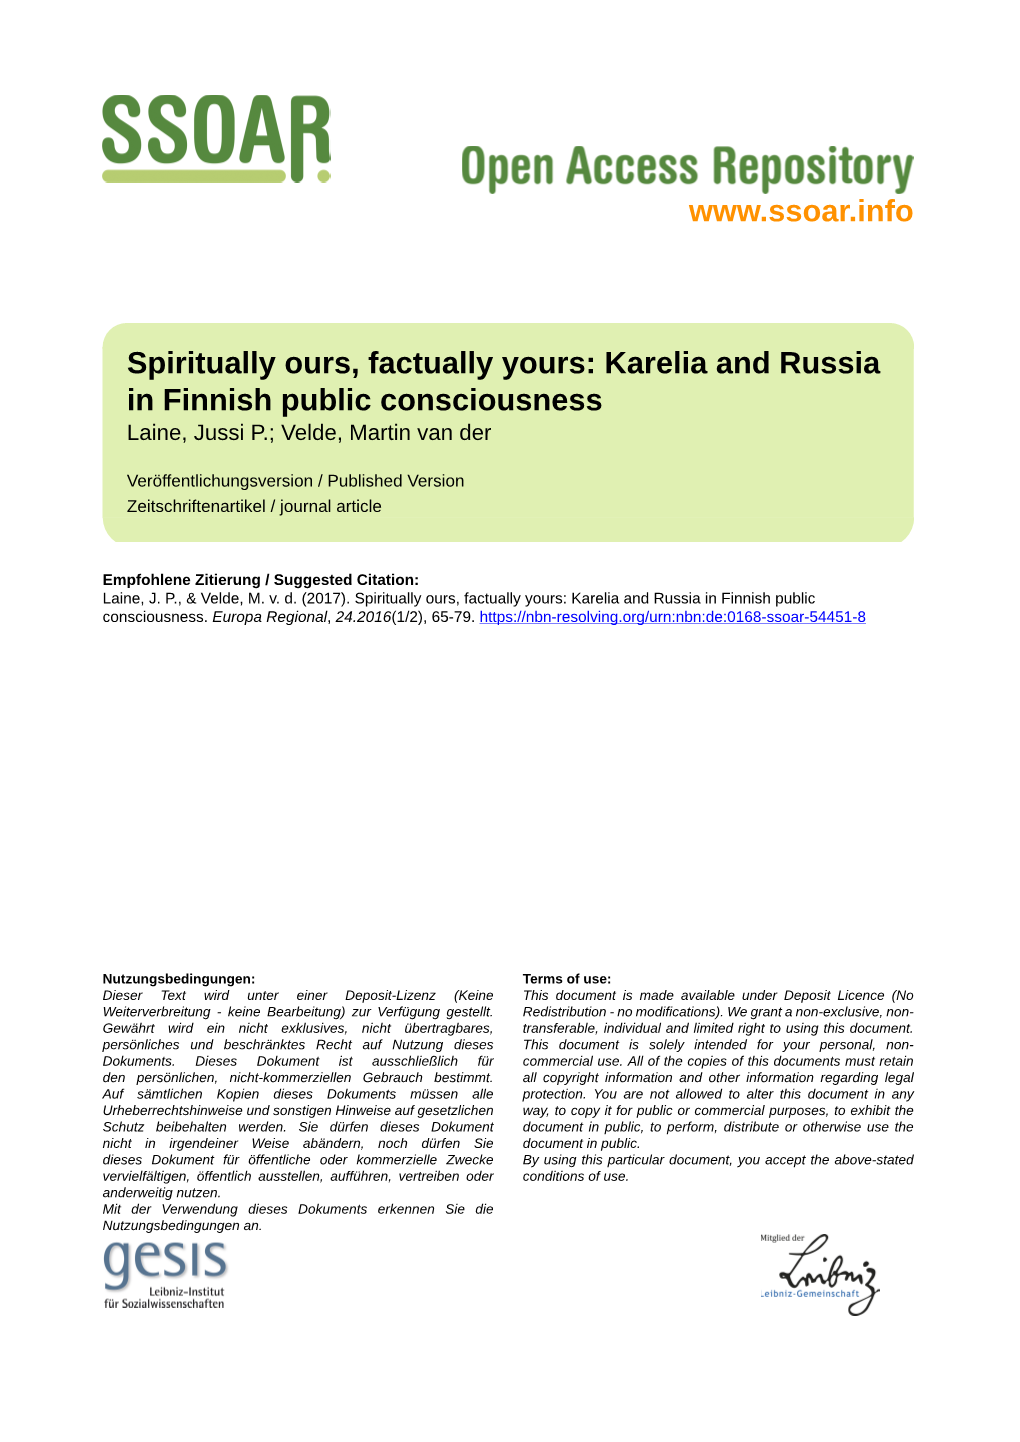 Karelia and Russia in Finnish Public Consciousness Laine, Jussi P.; Velde, Martin Van Der